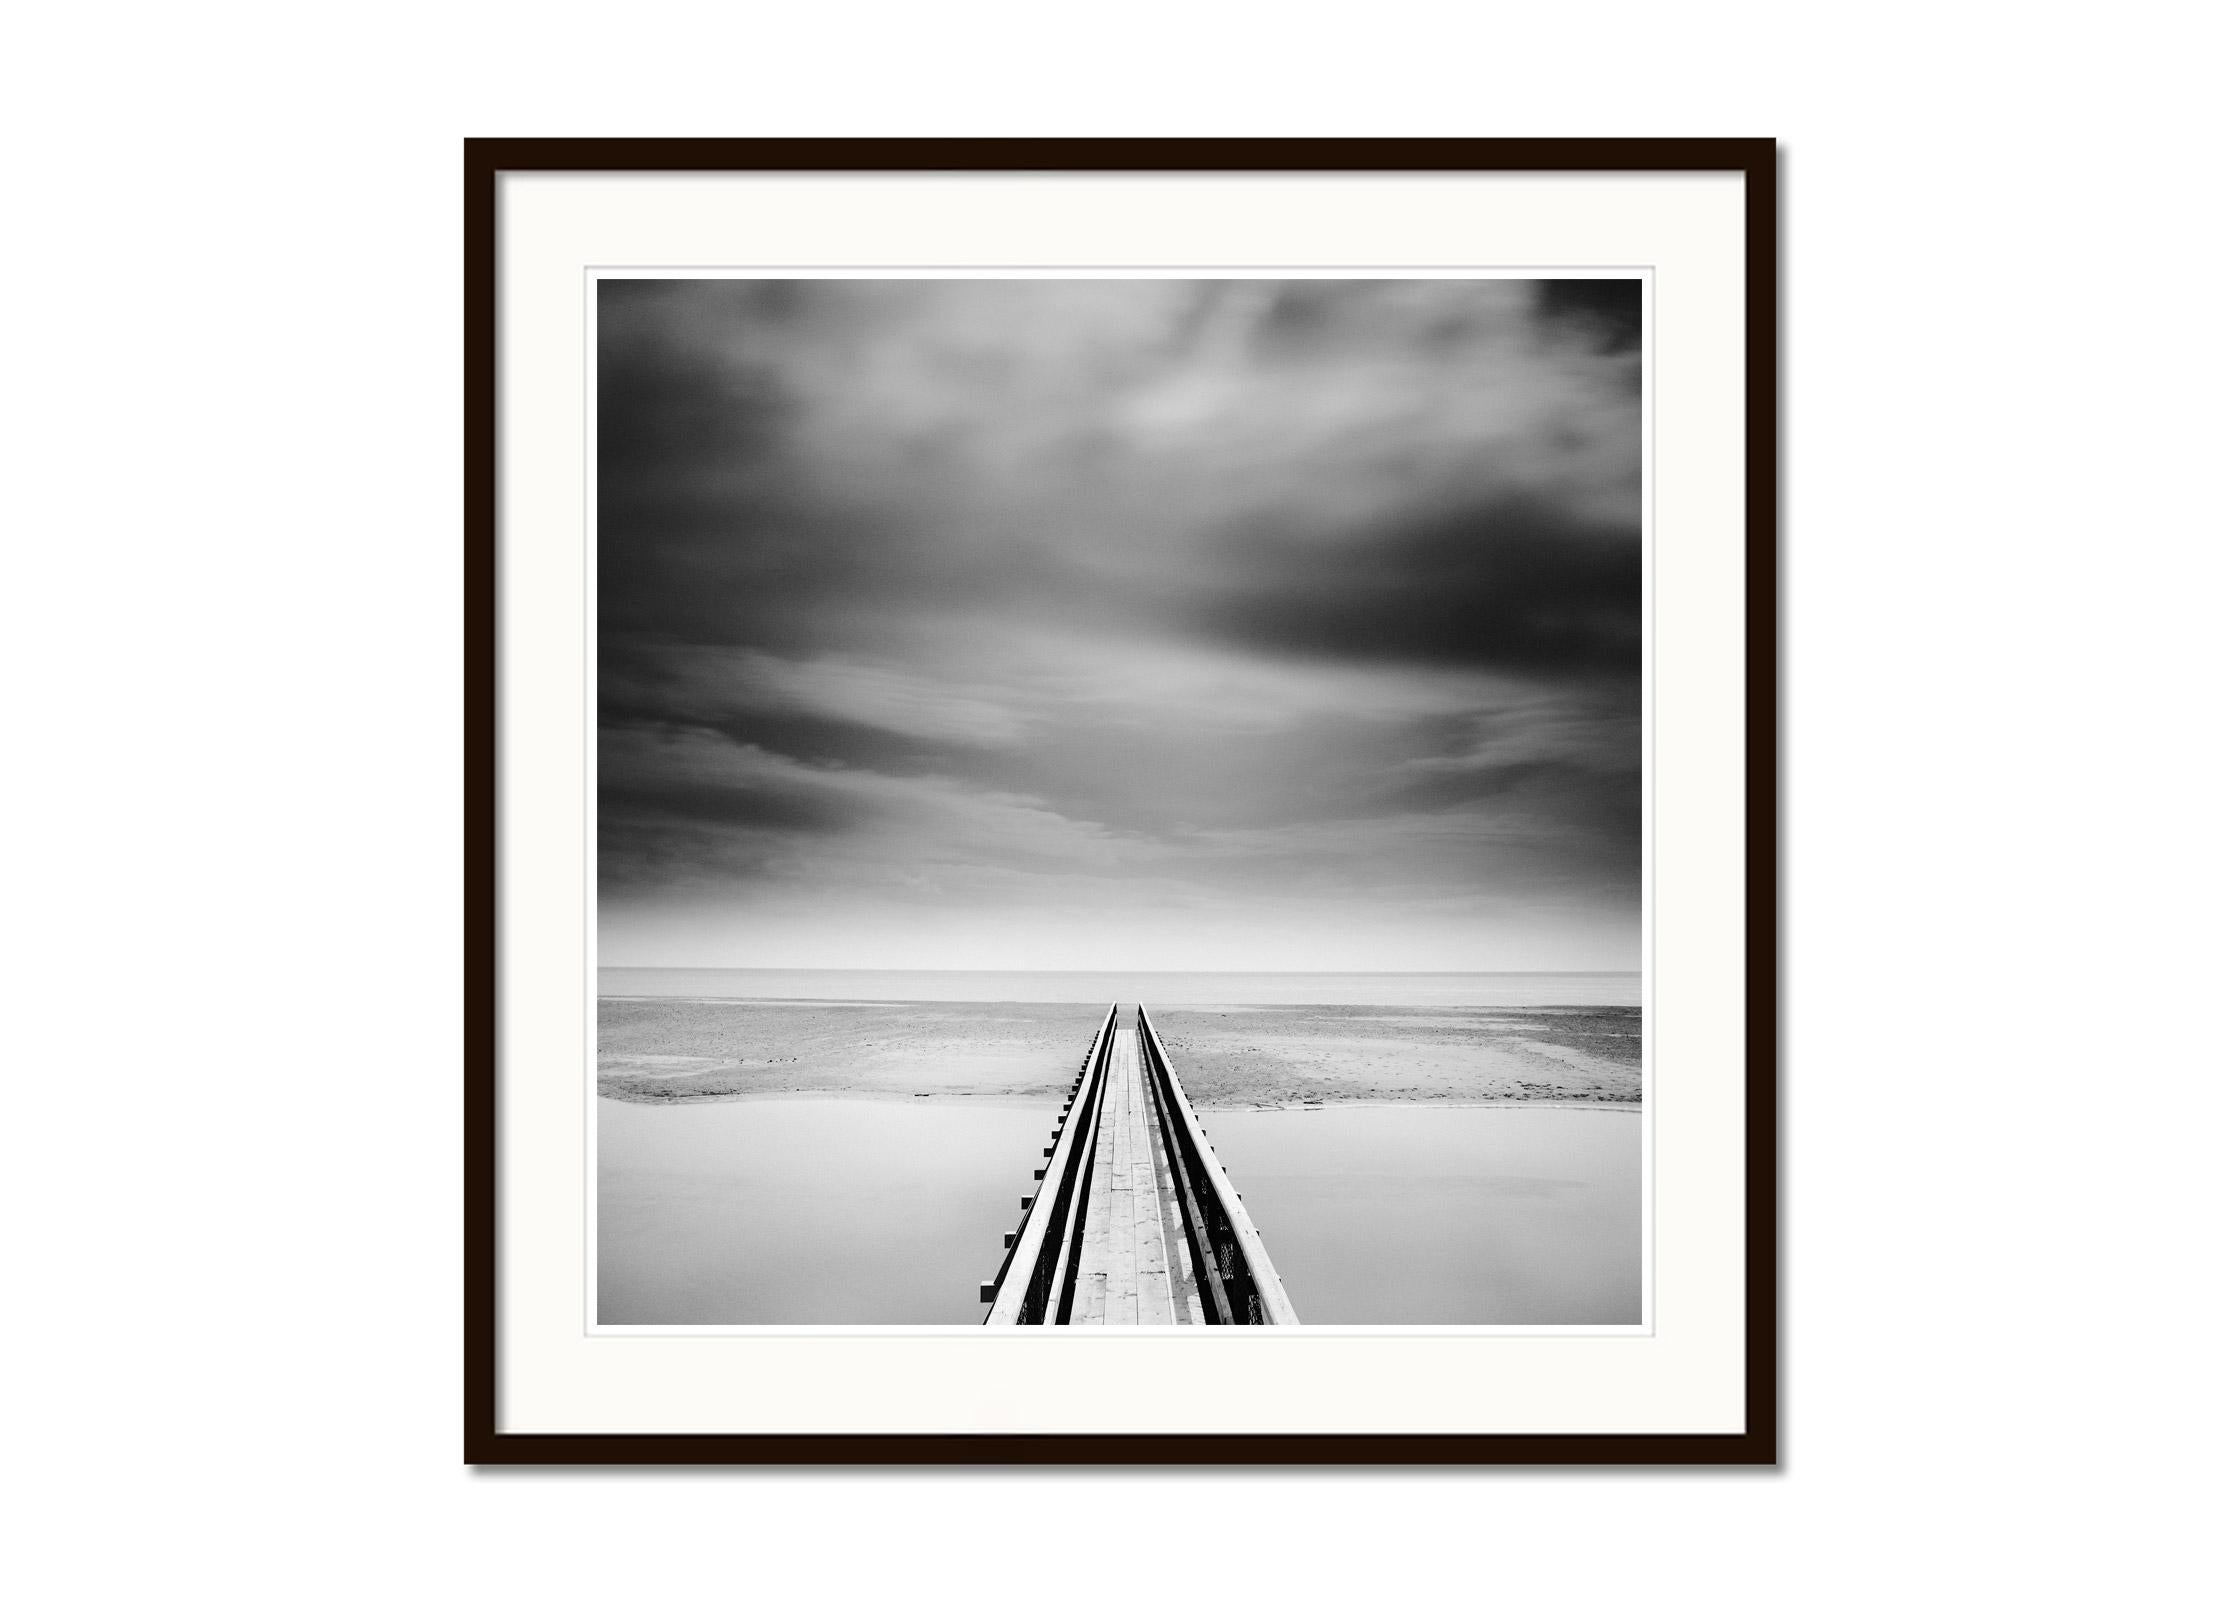 Über die Brücke, Irland, minimalistische Schwarz-Weiß-Landschaftsfotografie (Grau), Black and White Photograph, von Gerald Berghammer